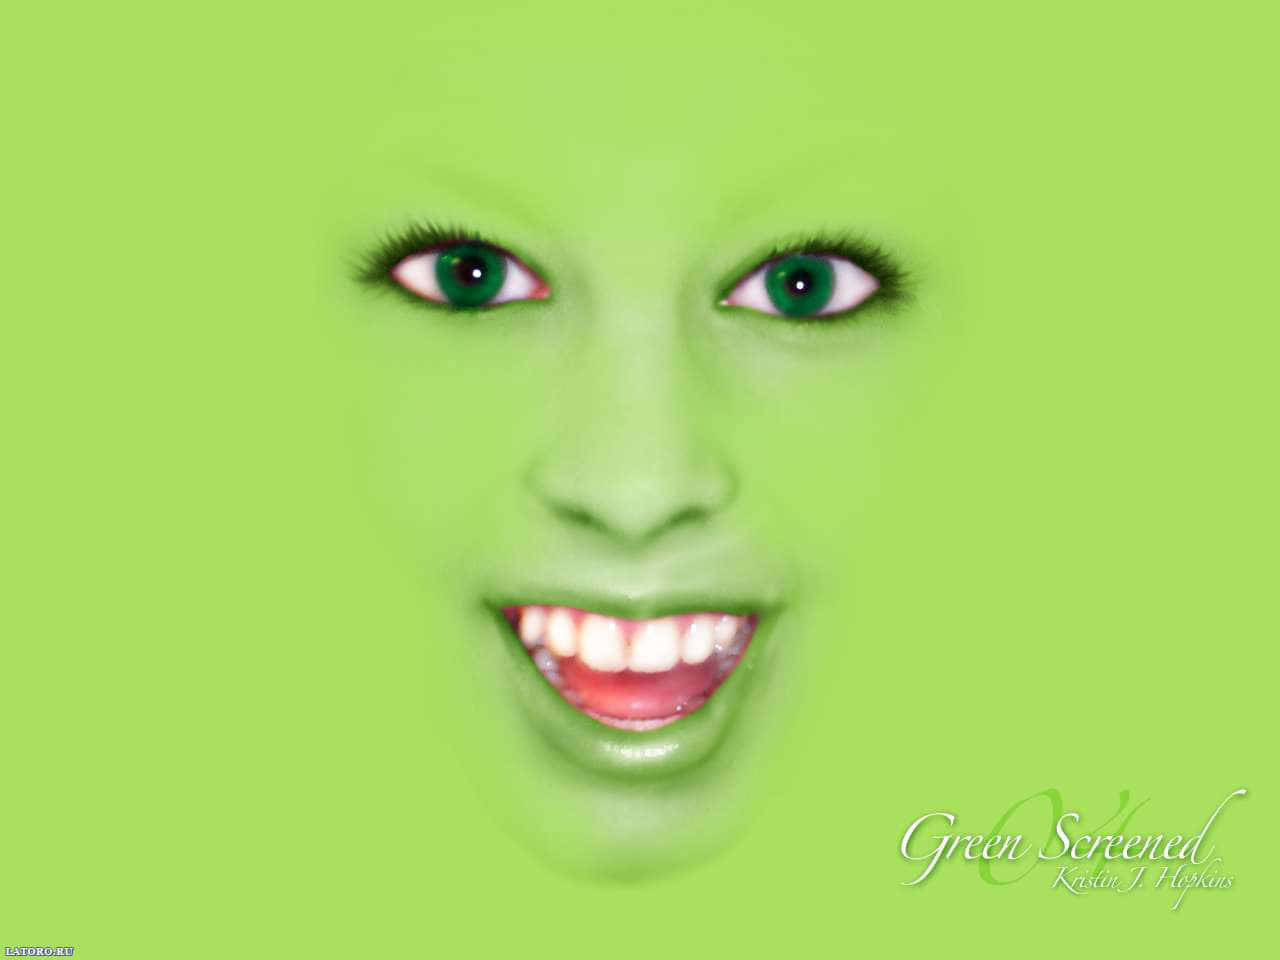 Green Screened Smile Wallpaper